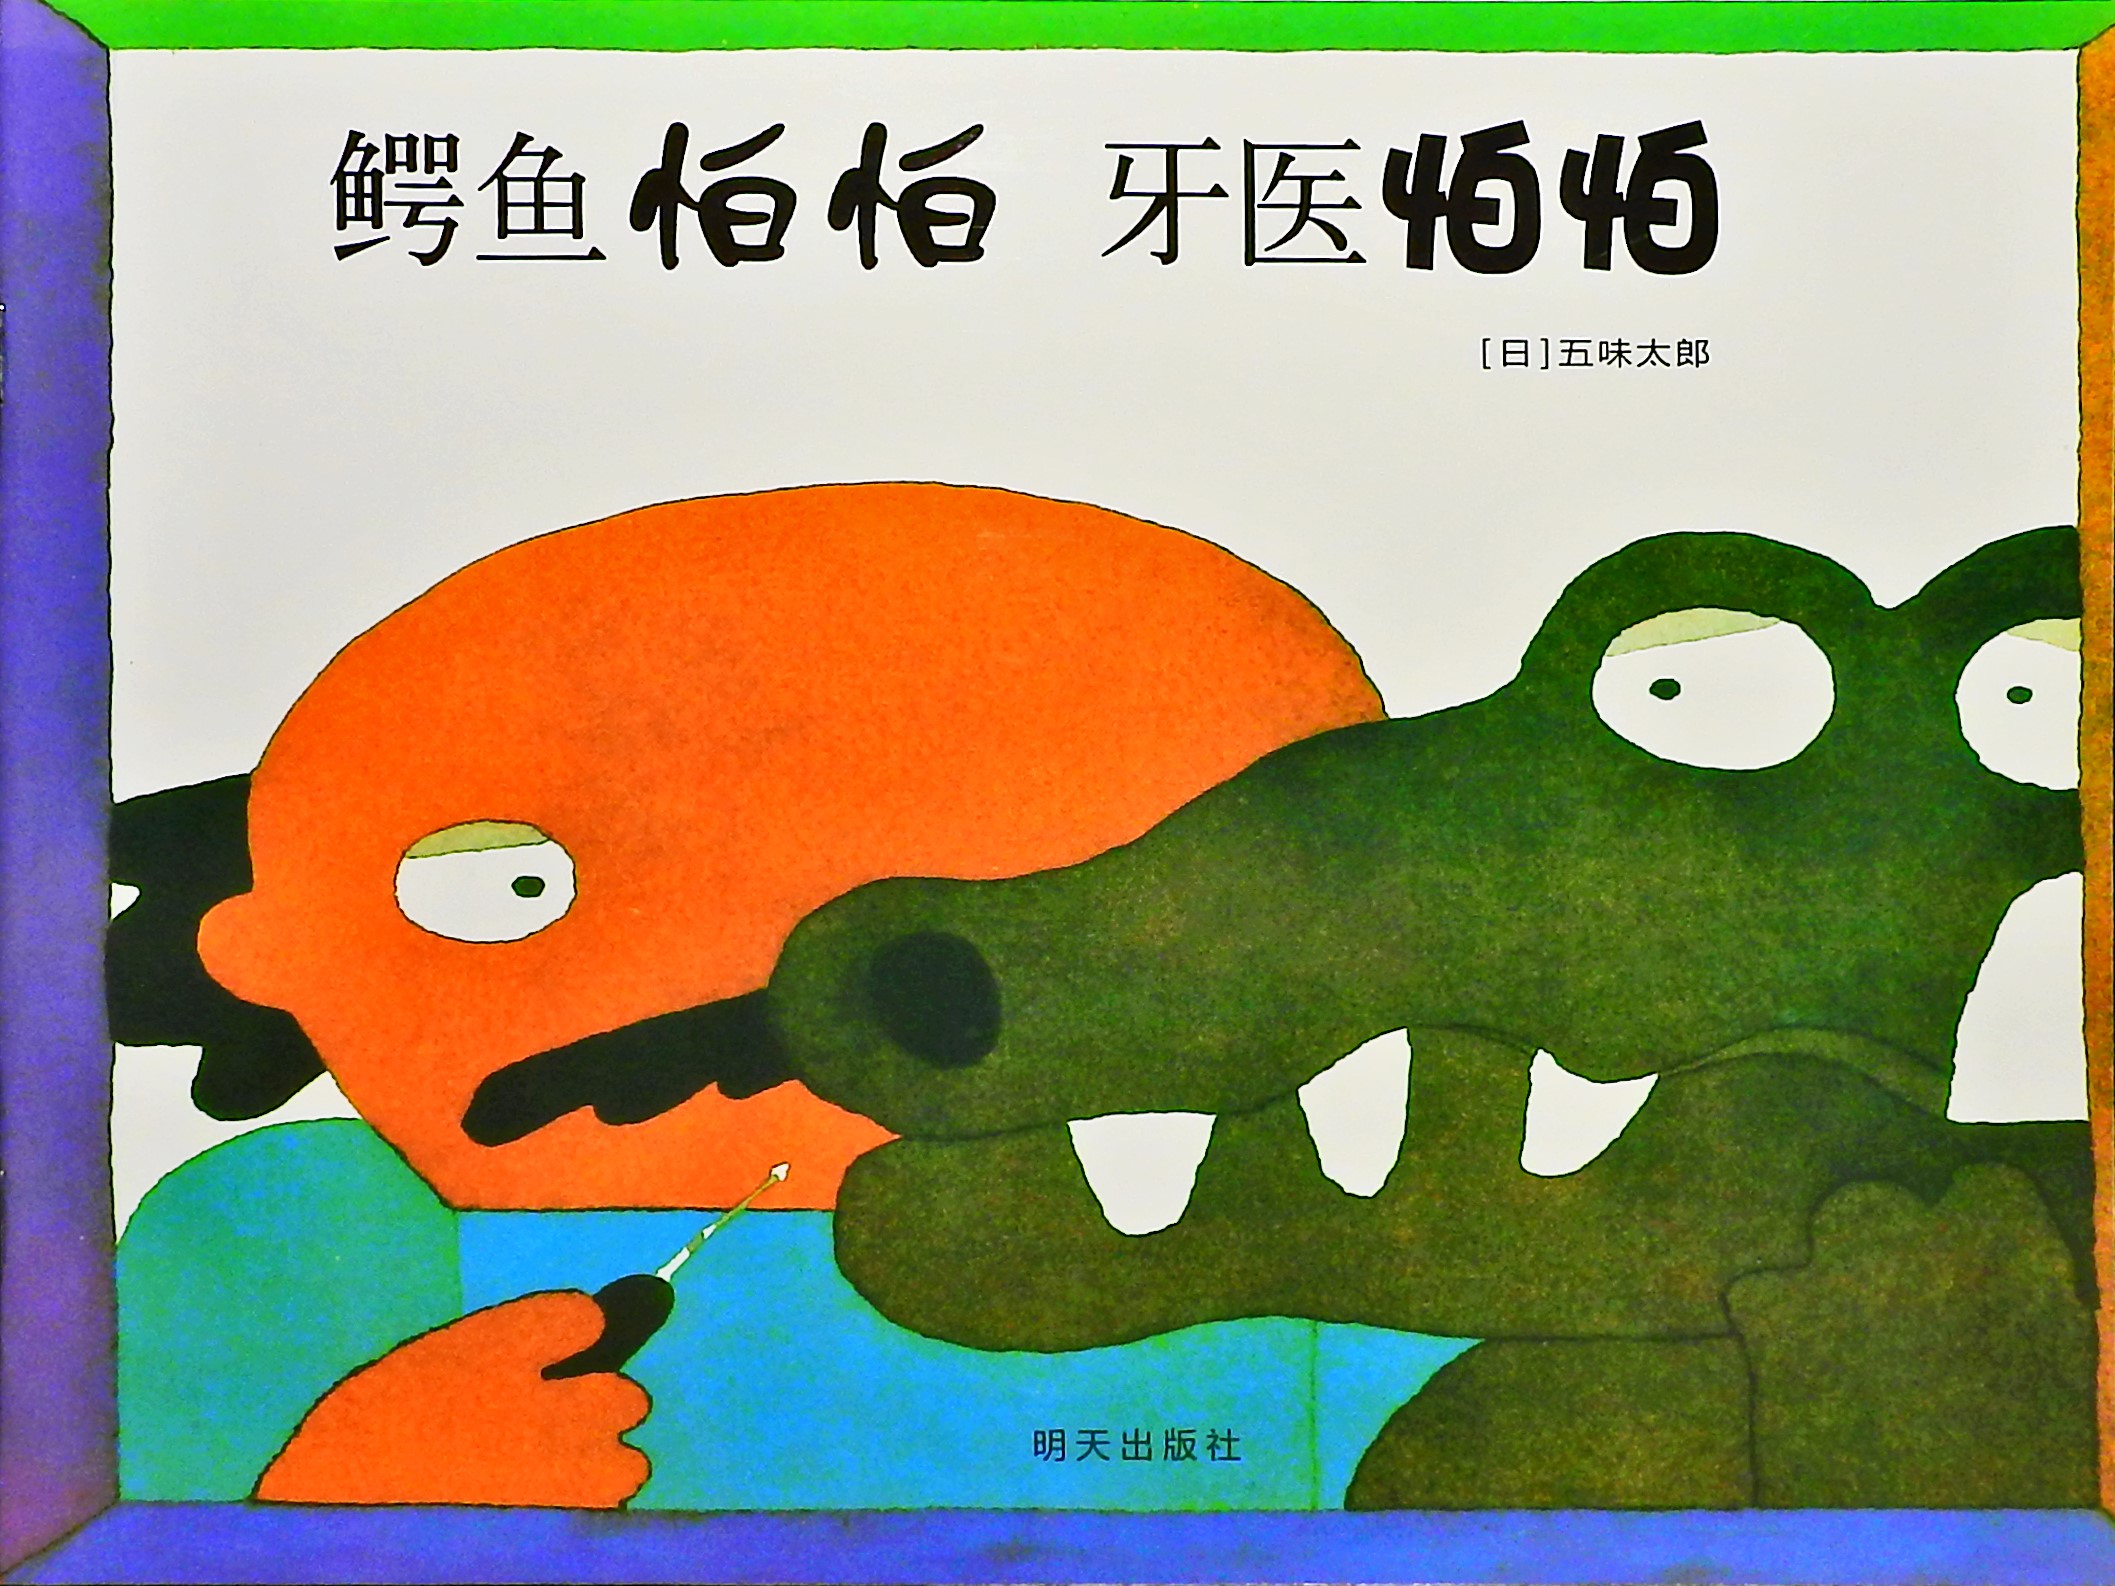 鳄鱼怕怕 牙医怕怕 (01),绘本,绘本故事,绘本阅读,故事书,童书,图画书,课外阅读